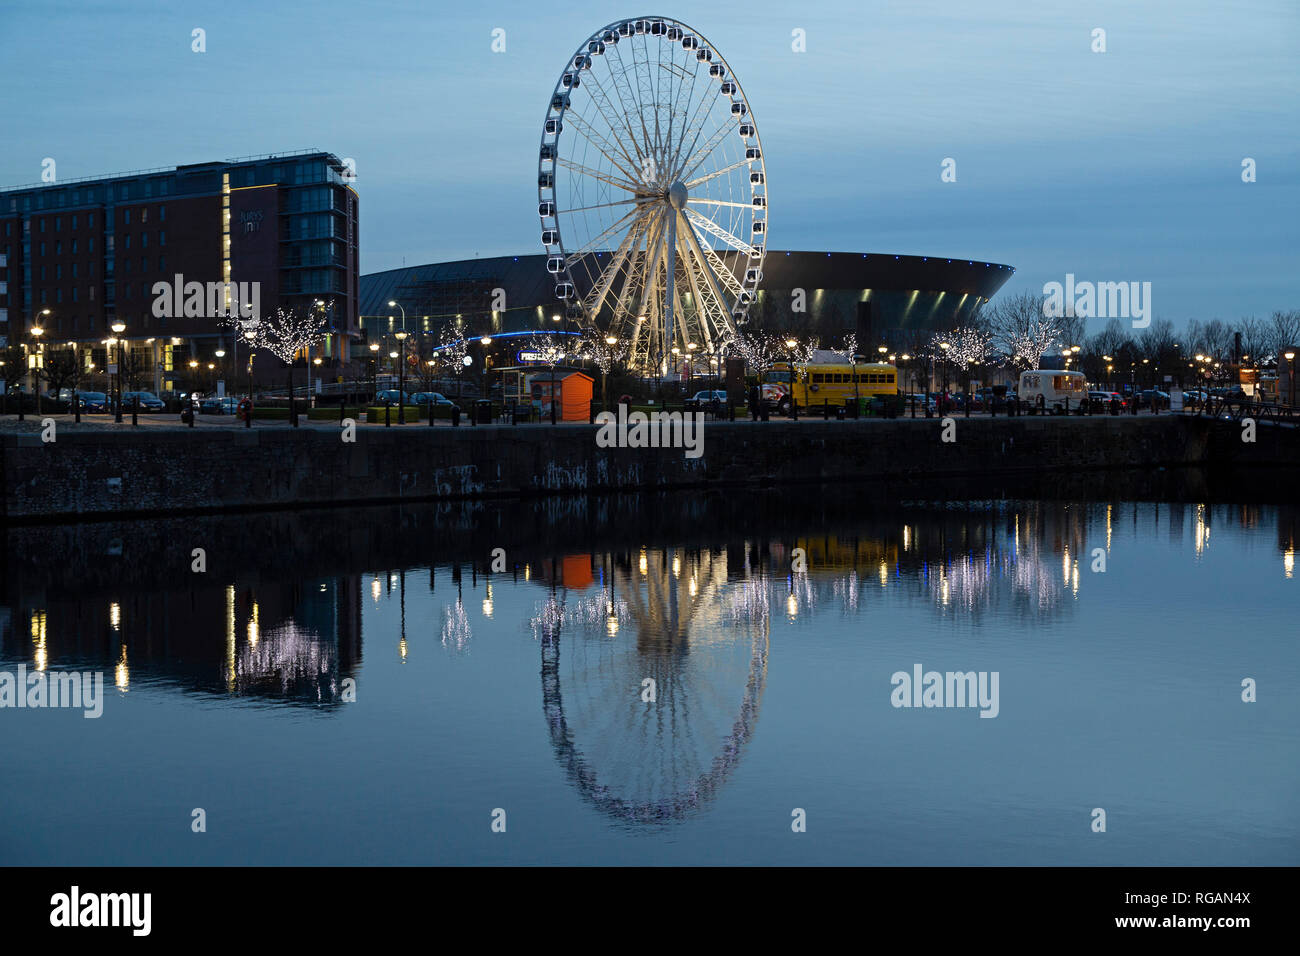 La ruota di Liverpool a chiglia Wharf di Liverpool, in Inghilterra. La ruota panoramica Ferris sorge accanto al M&S Bank Arena (ex Echo Arena Liverpool). Foto Stock